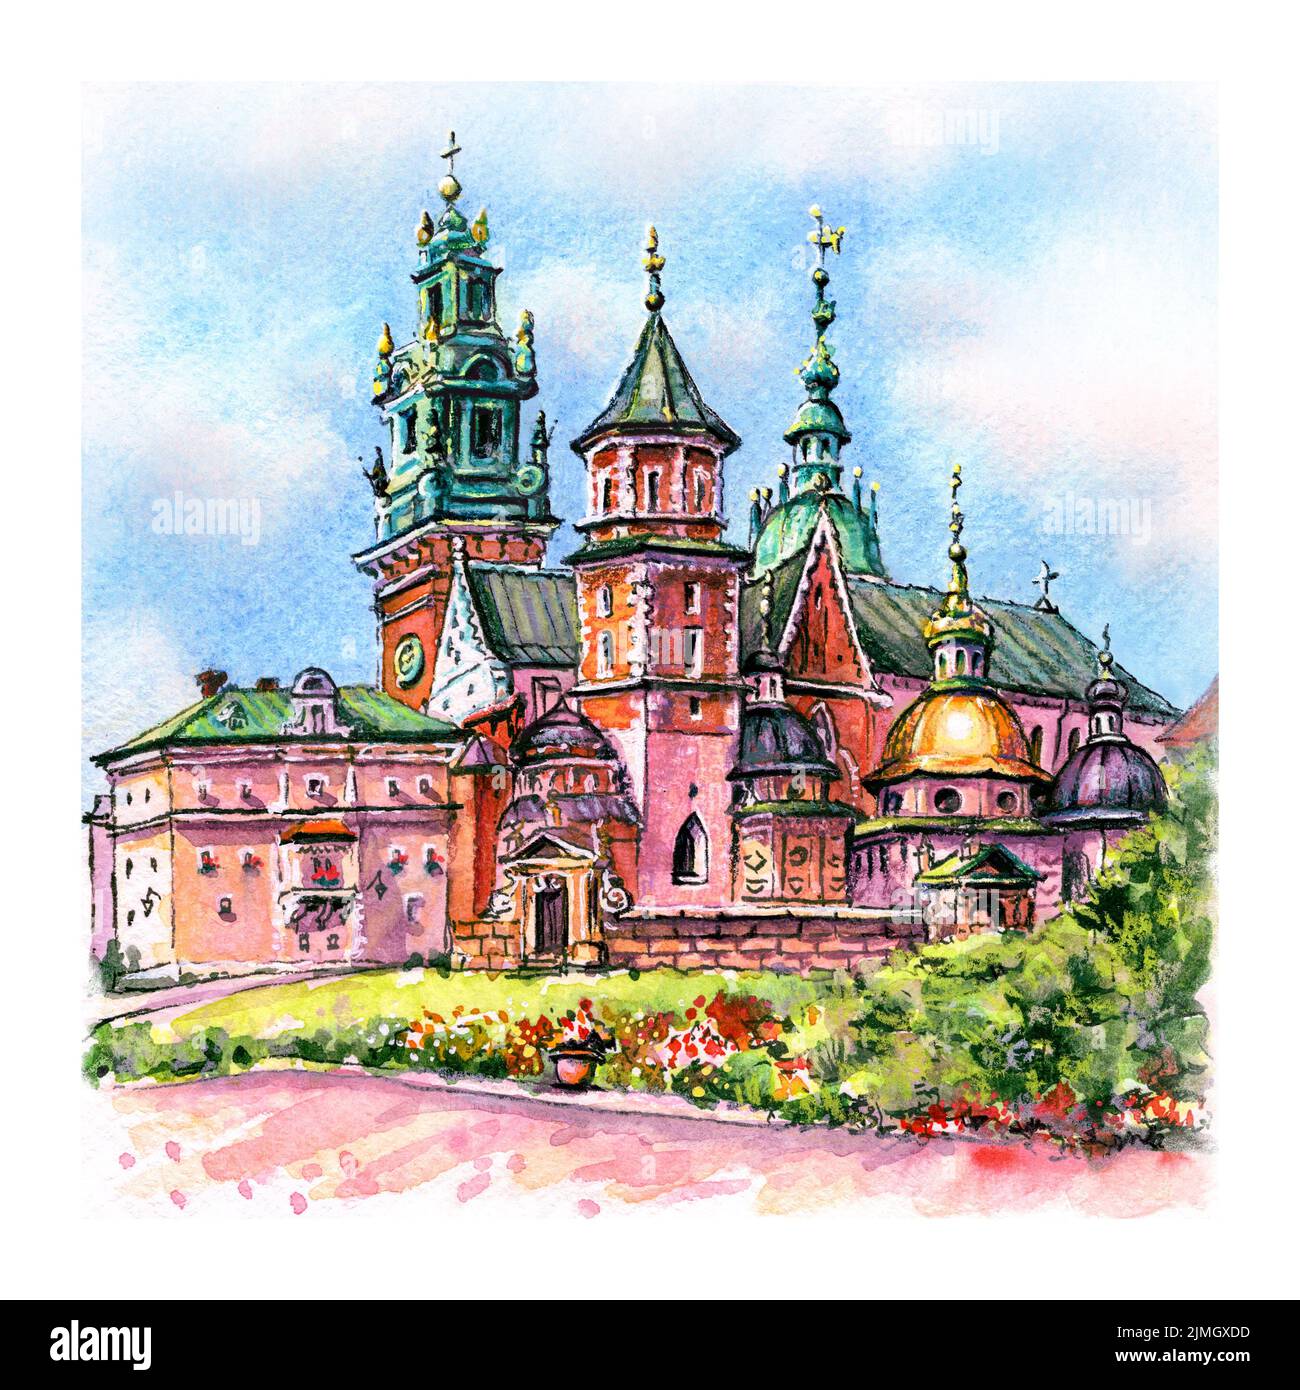 Watercolor sketch of Wawel Castle in Krakow, Poland Stock Photo